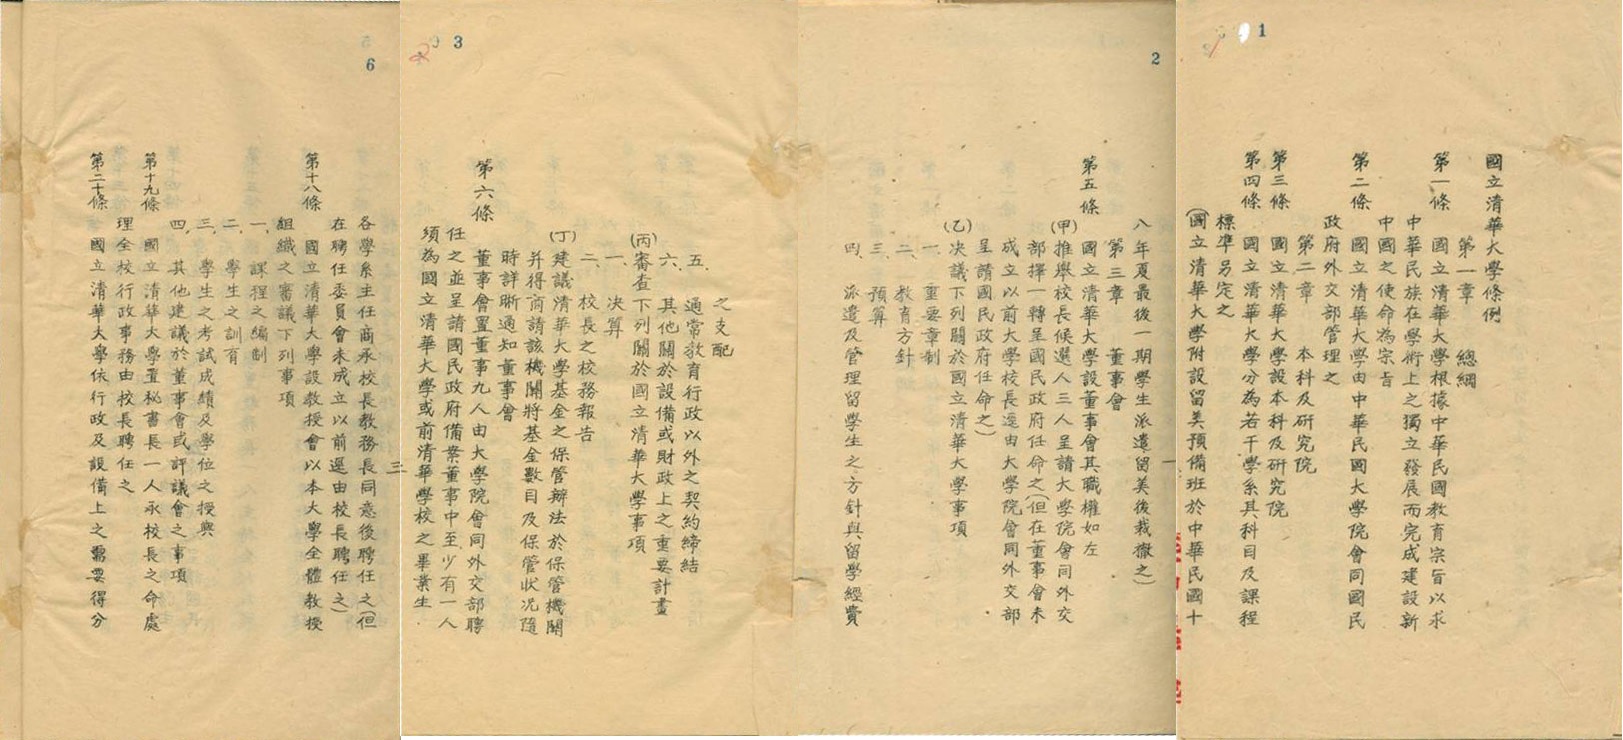 Regulations of National Tsing Hua University, September 1928.